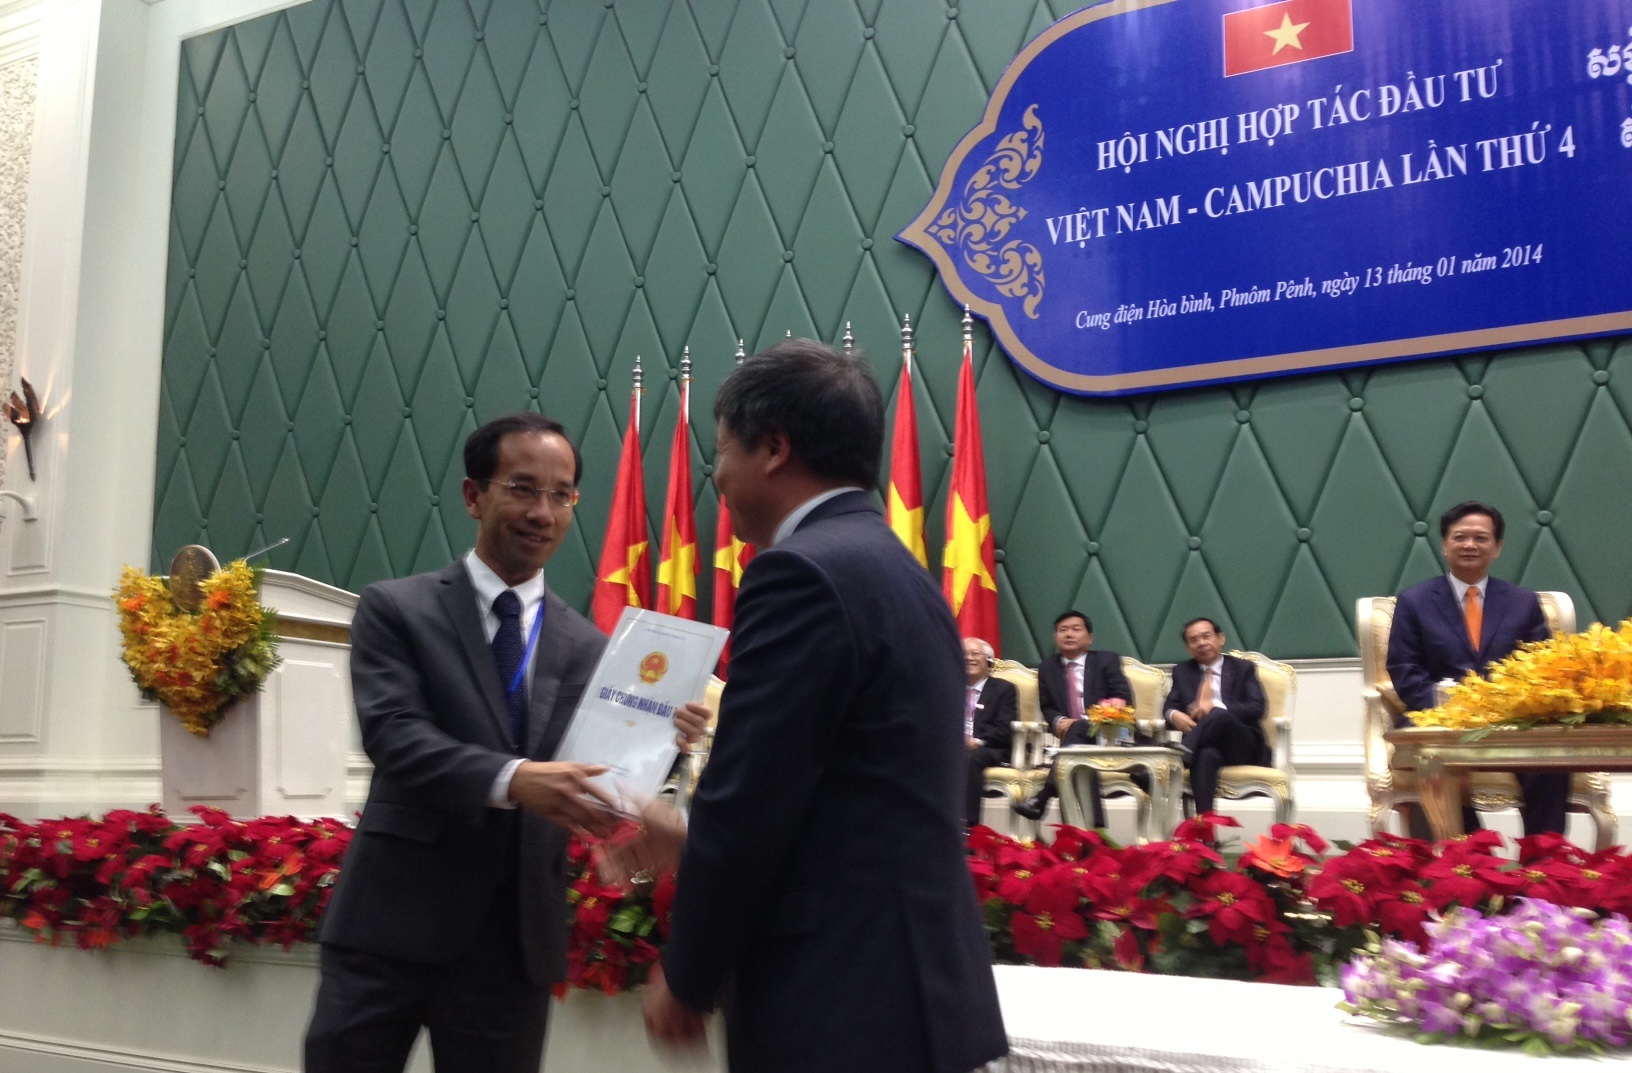 Ông Mai Hoài Anh trong lần lãnh đạo Bộ Kế hoạch & Đầu tư trao giấy phép đầu tư vào Campuchia